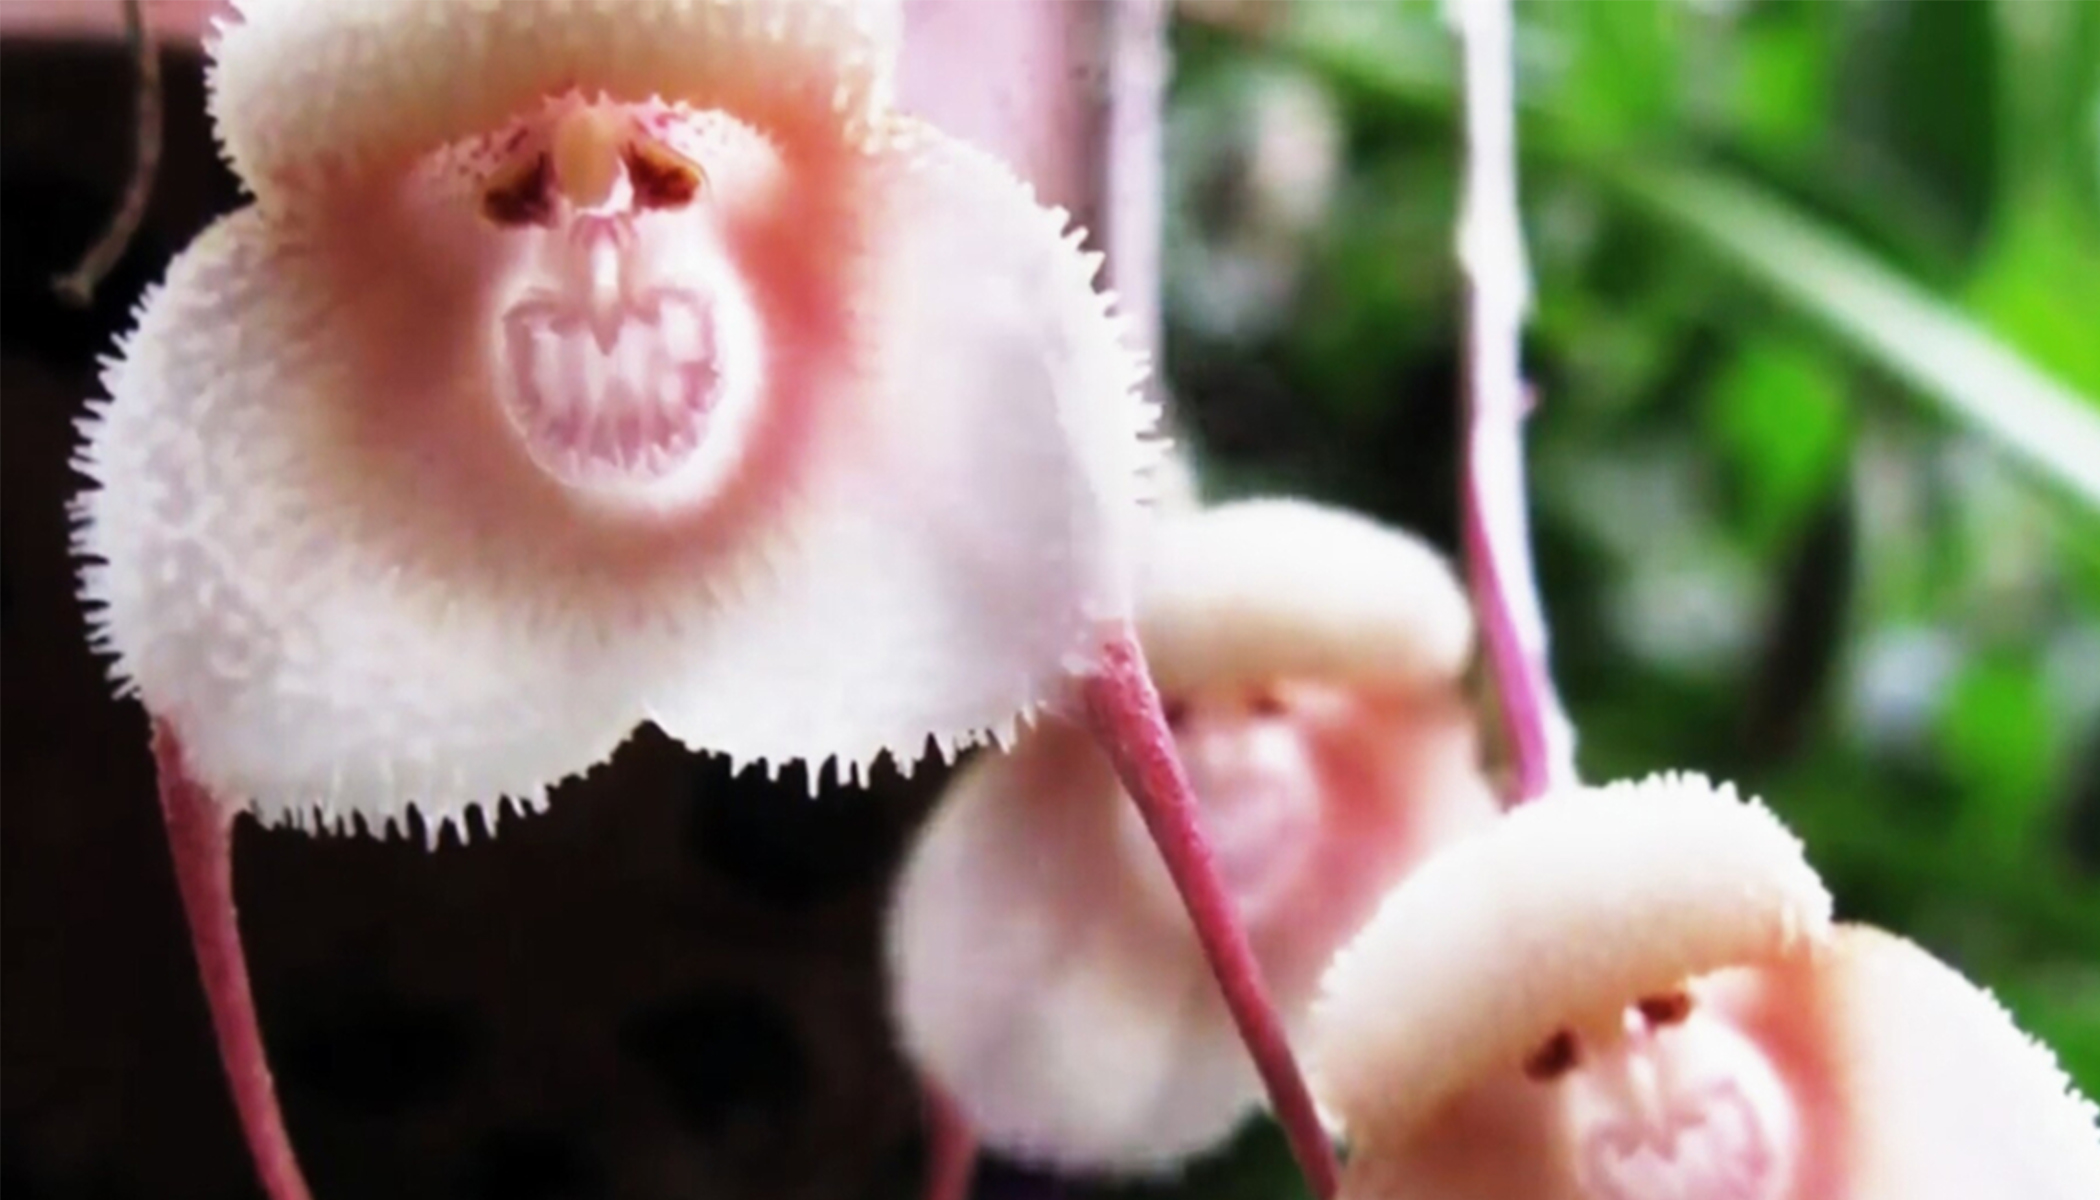 Dragon Orchid: A Cheeky Flower That Looks Like Cute Little Monkeys